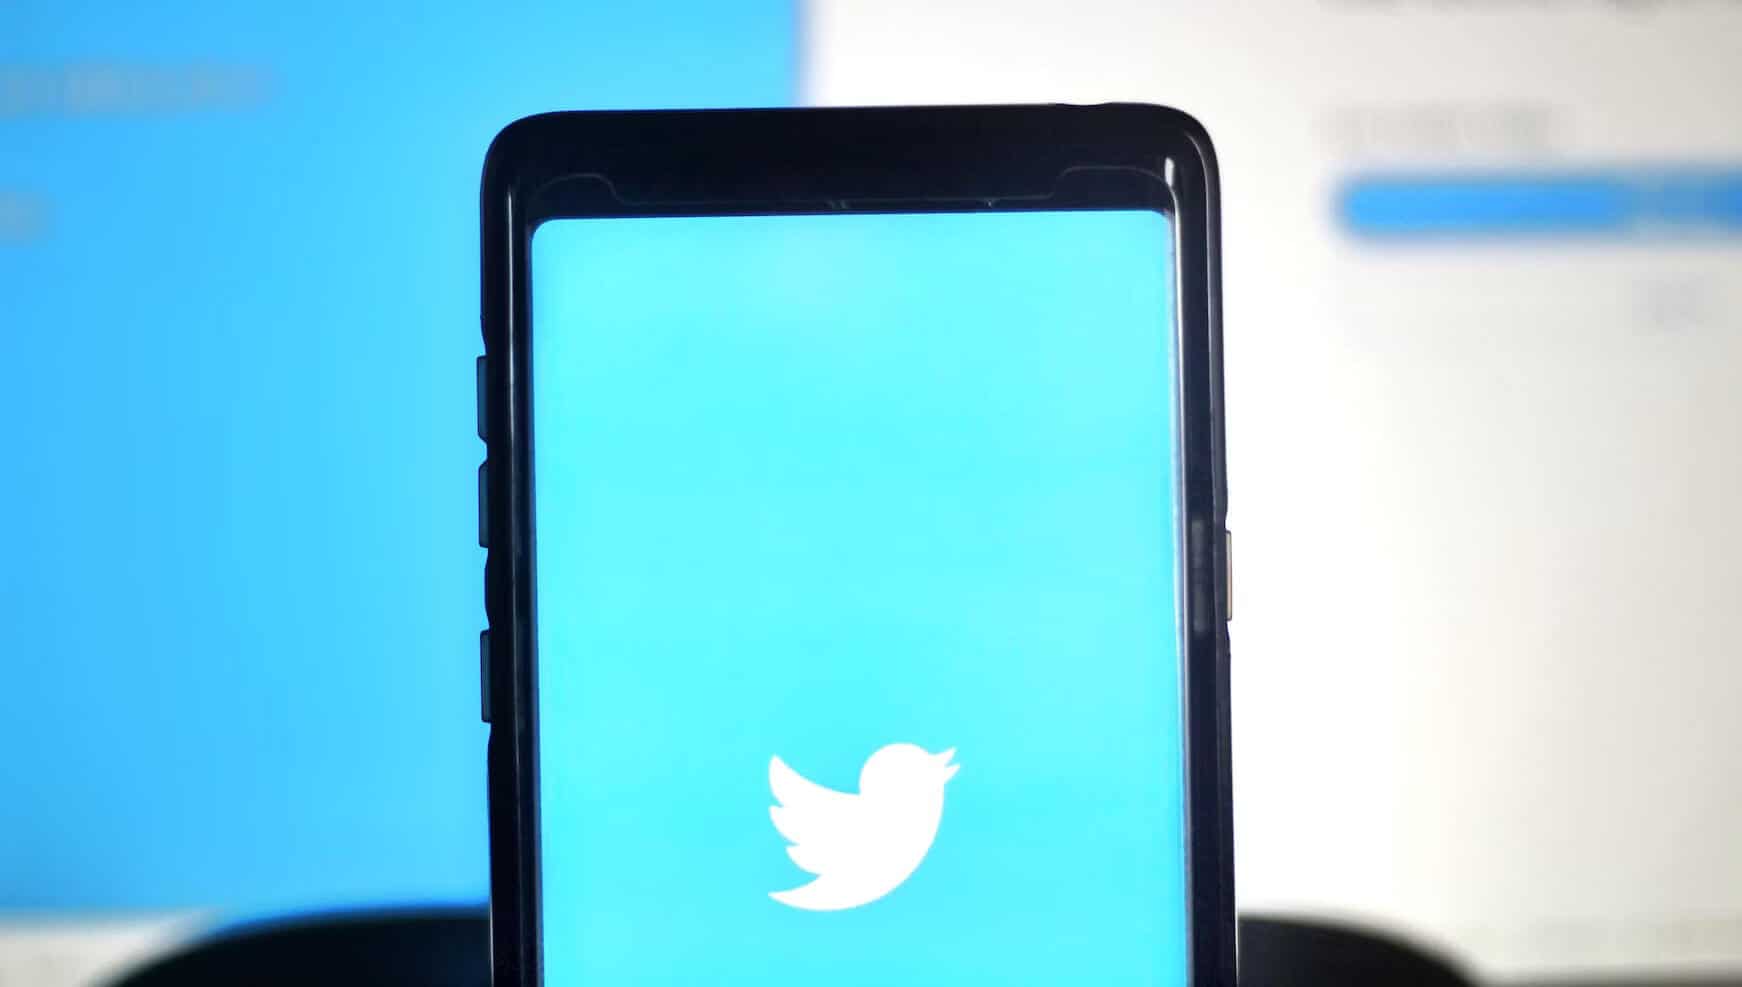 Black smartphone displaying Twitter logo